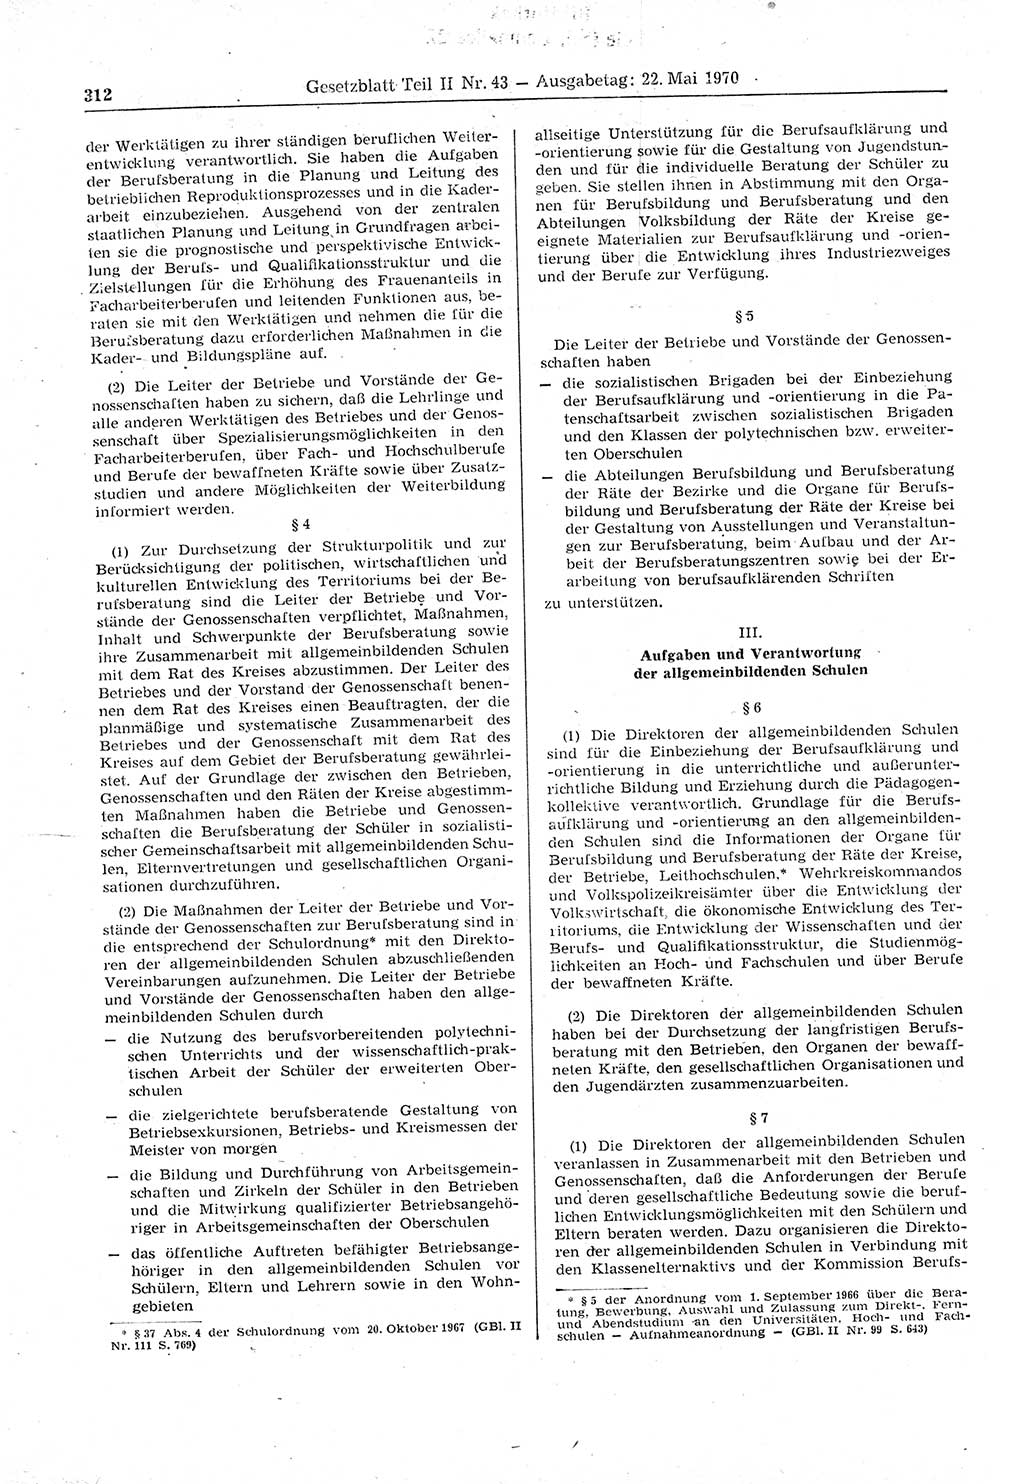 Gesetzblatt (GBl.) der Deutschen Demokratischen Republik (DDR) Teil ⅠⅠ 1970, Seite 312 (GBl. DDR ⅠⅠ 1970, S. 312)